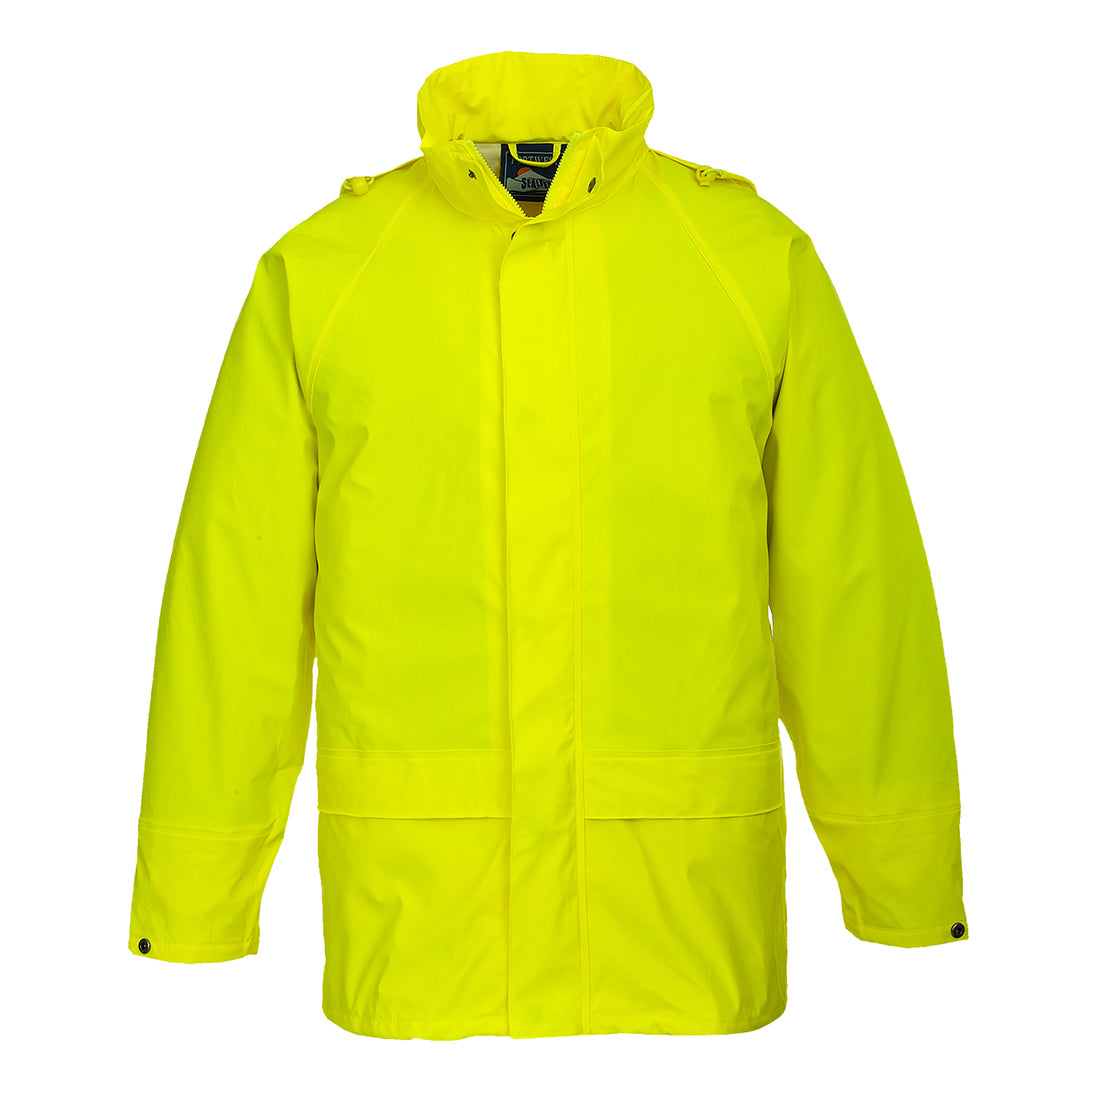 Portwest S450 Yellow Sz S Sealtex Classic Jacket Waterproof Rain Coat Parka Work Wear